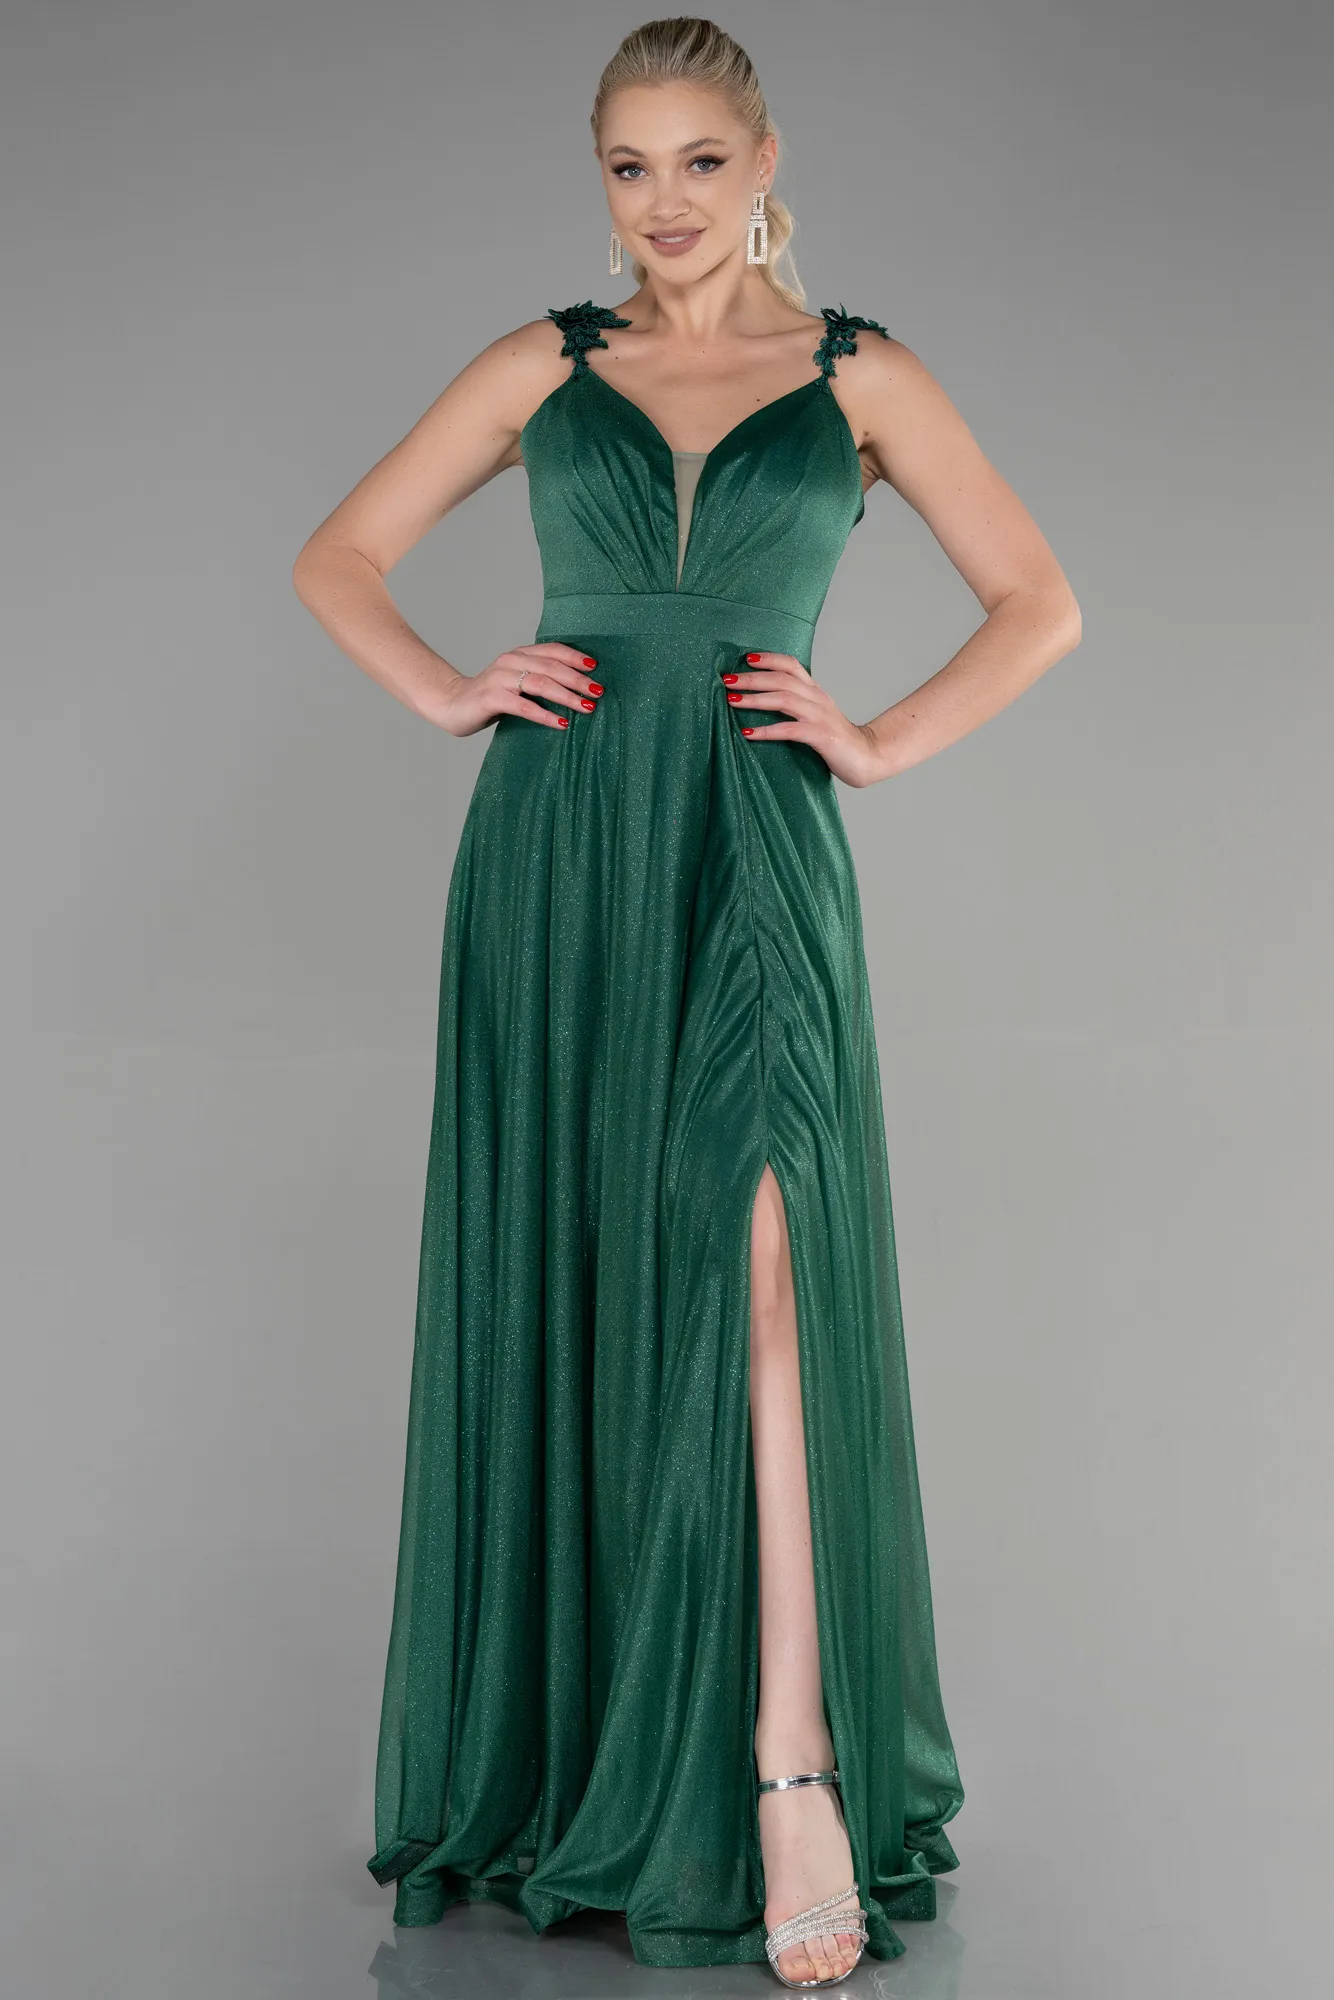 Emerald Green-Long Evening Dress ABU2307